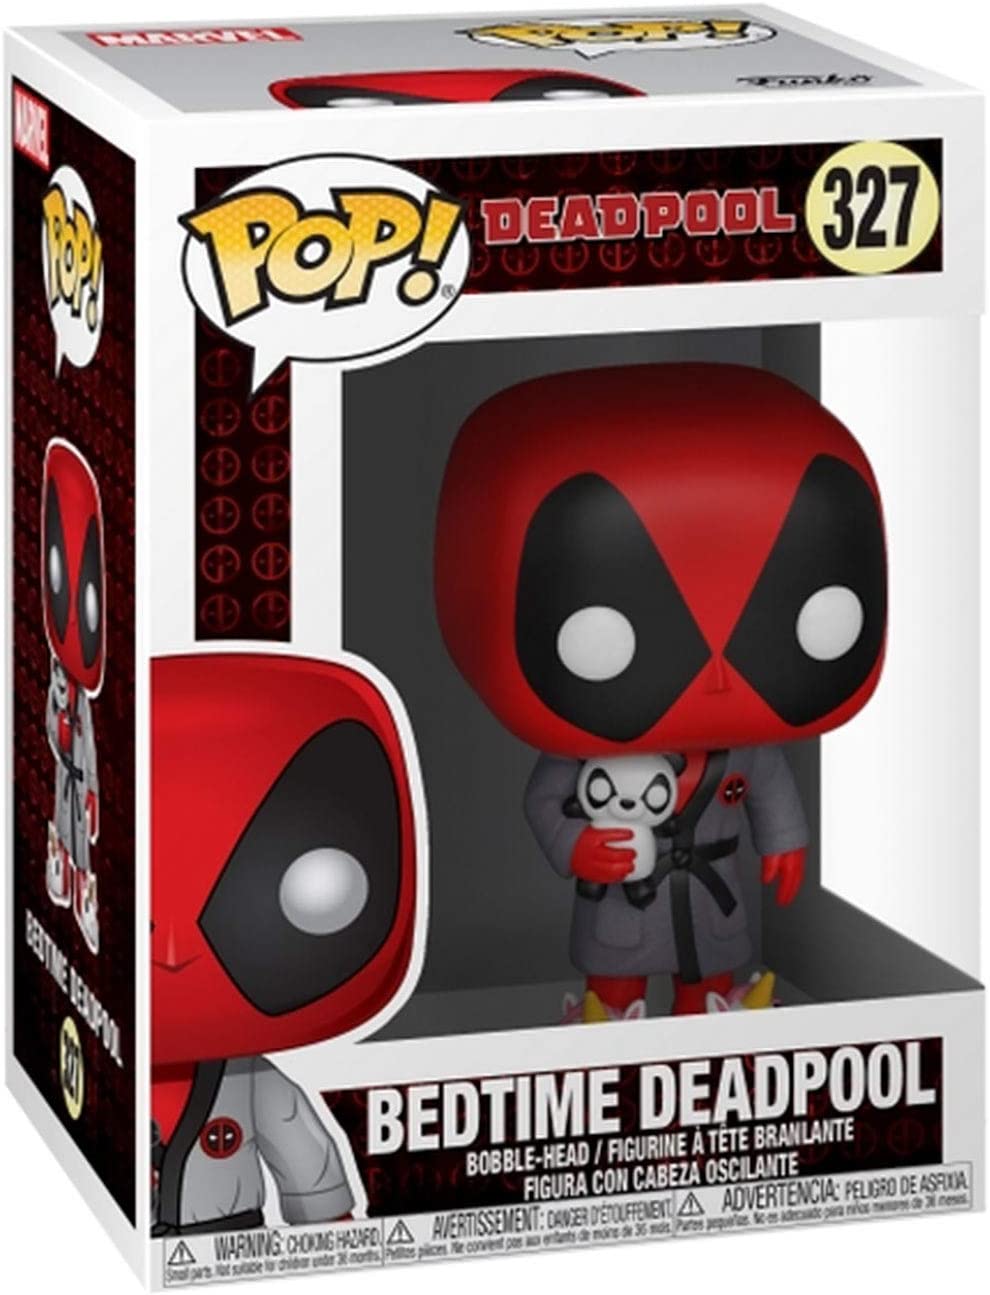 Deadpool - Bedtime Deadpool 327 - Funko Pop!